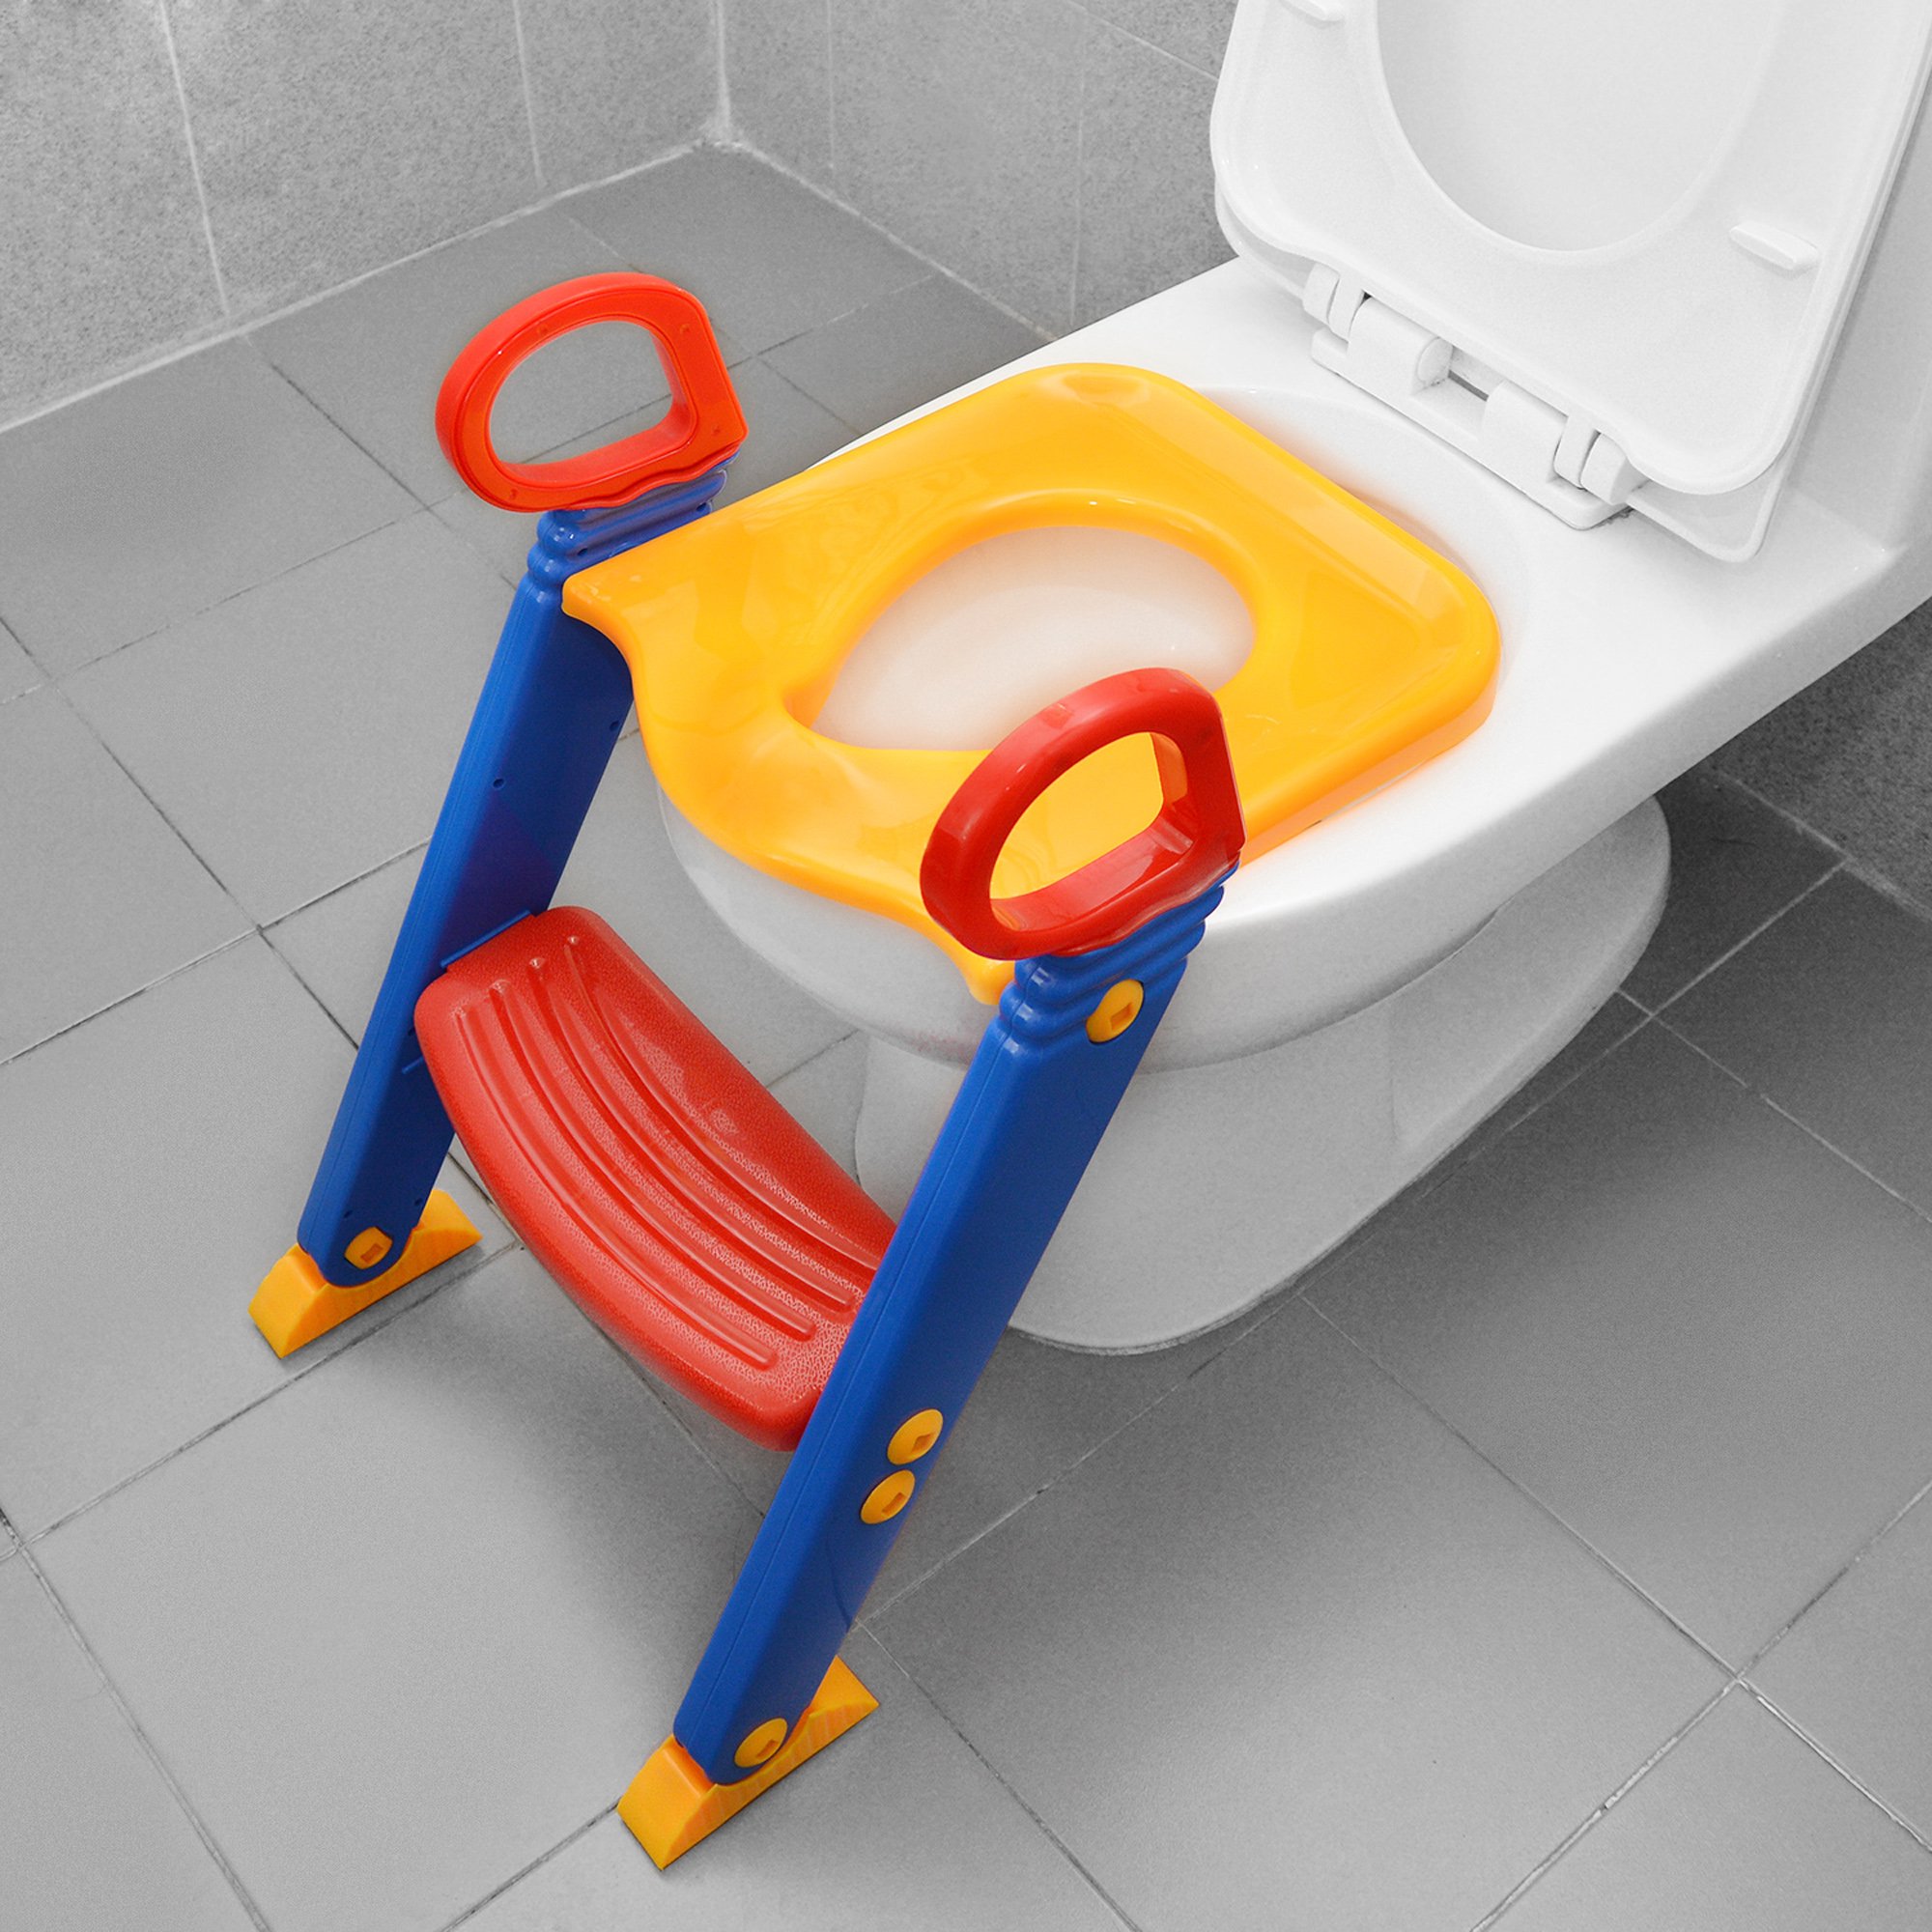 Generic Chaise coussin toilette pour enfants,siège de toilette